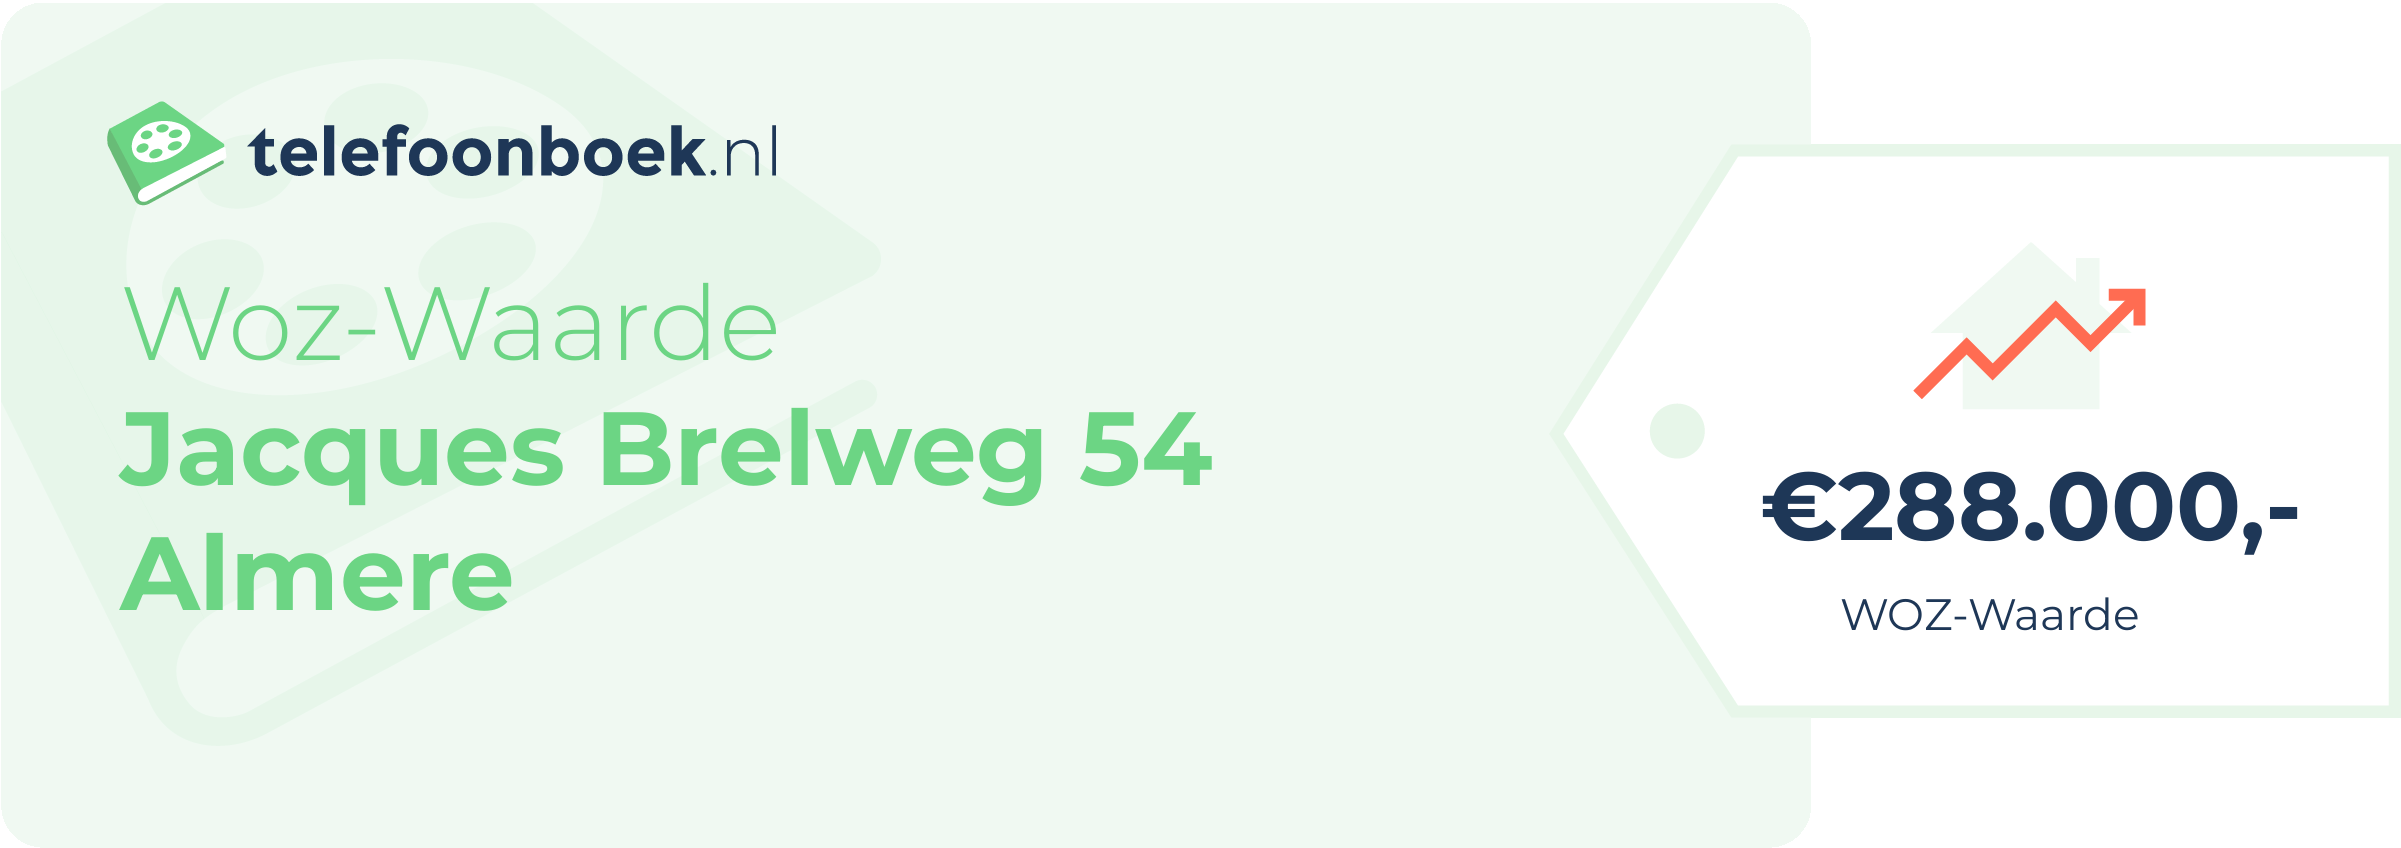 WOZ-waarde Jacques Brelweg 54 Almere